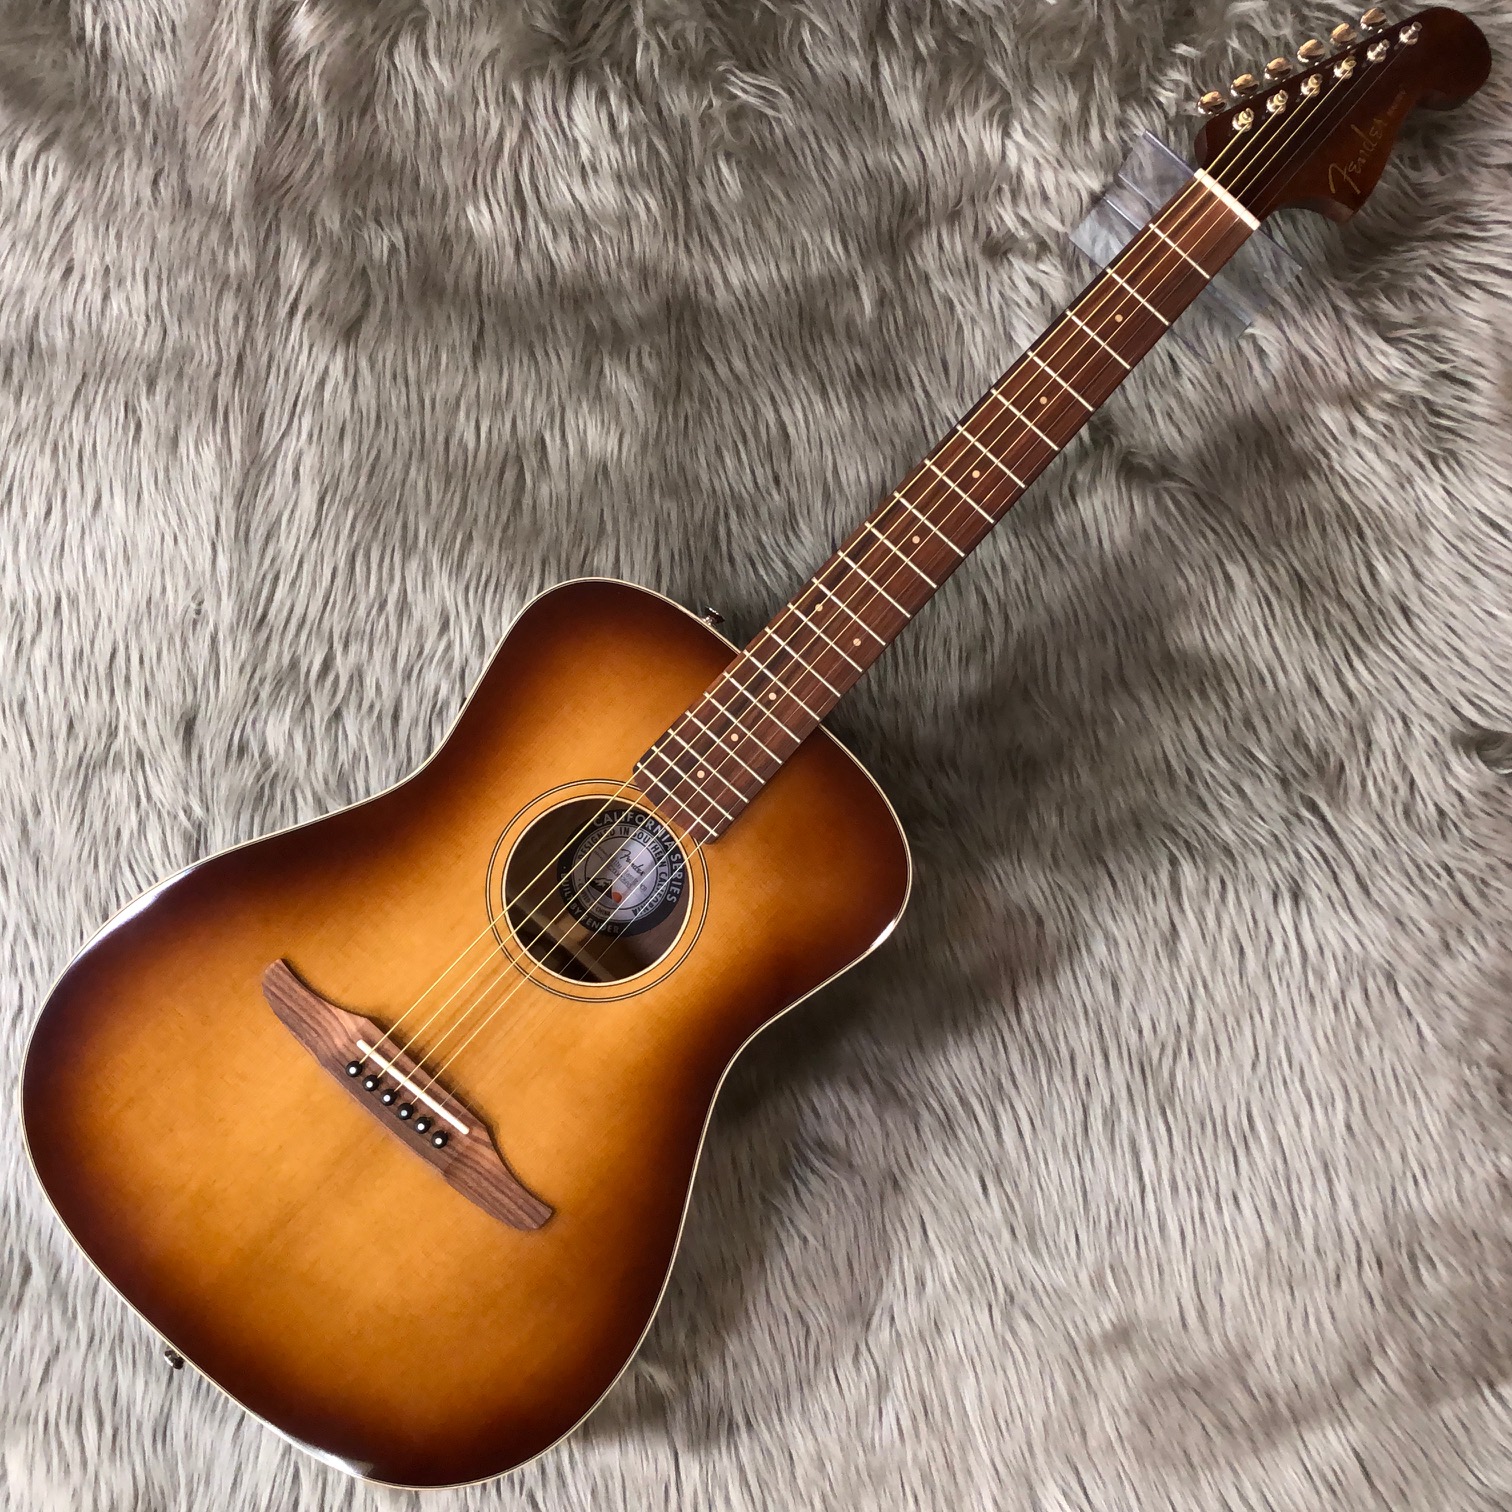 【アコースティックギター】Fenderのコンパクトなアコギの展示ございます - 洛北阪急スクエア店 店舗情報-島村楽器